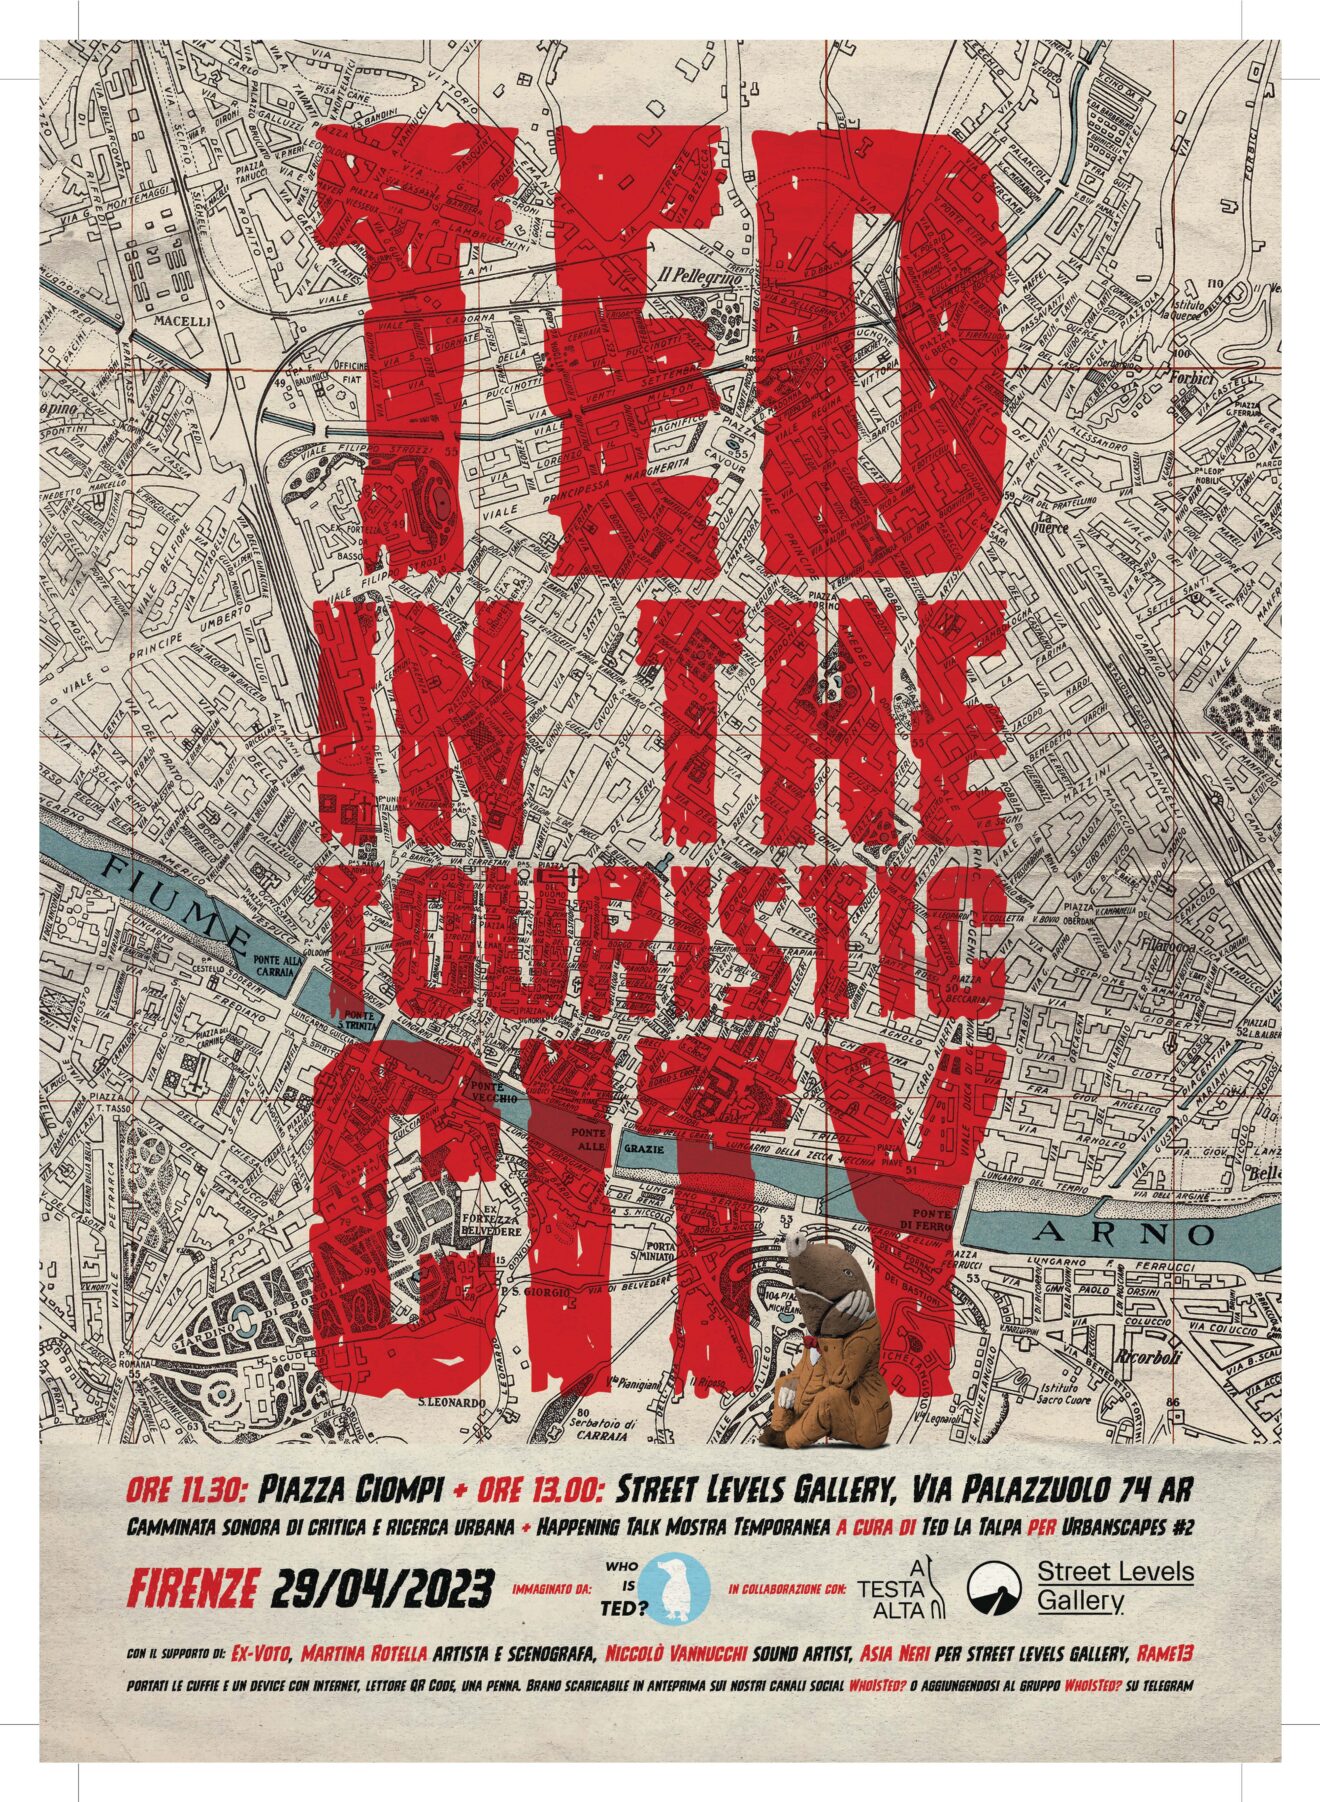 Urbanscapes #2, Ted la Talpa nella città turistica, in piazza dei Ciompi il 29 aprile